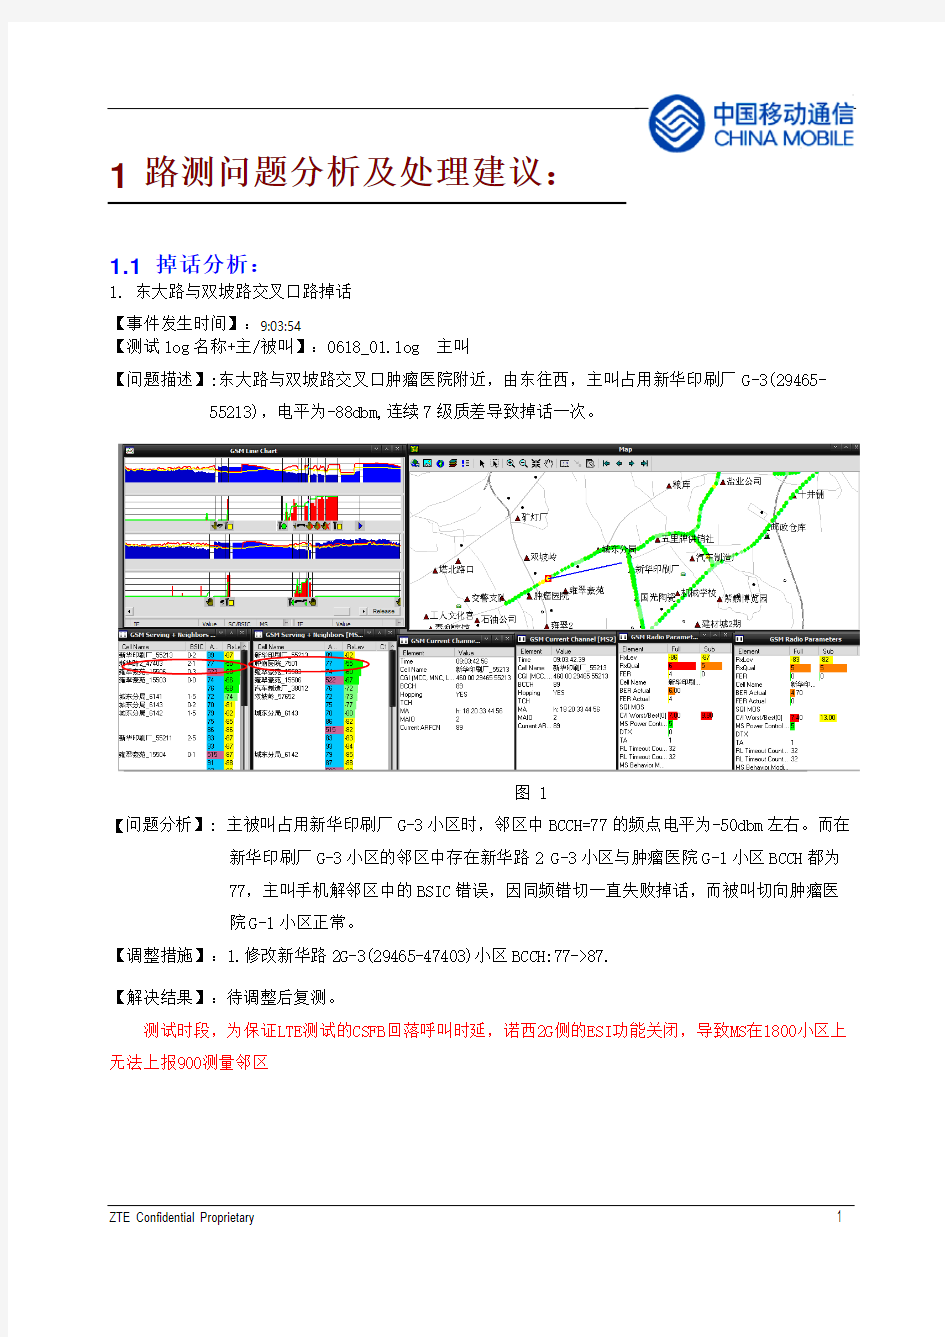 路测问题分析报告(模板)